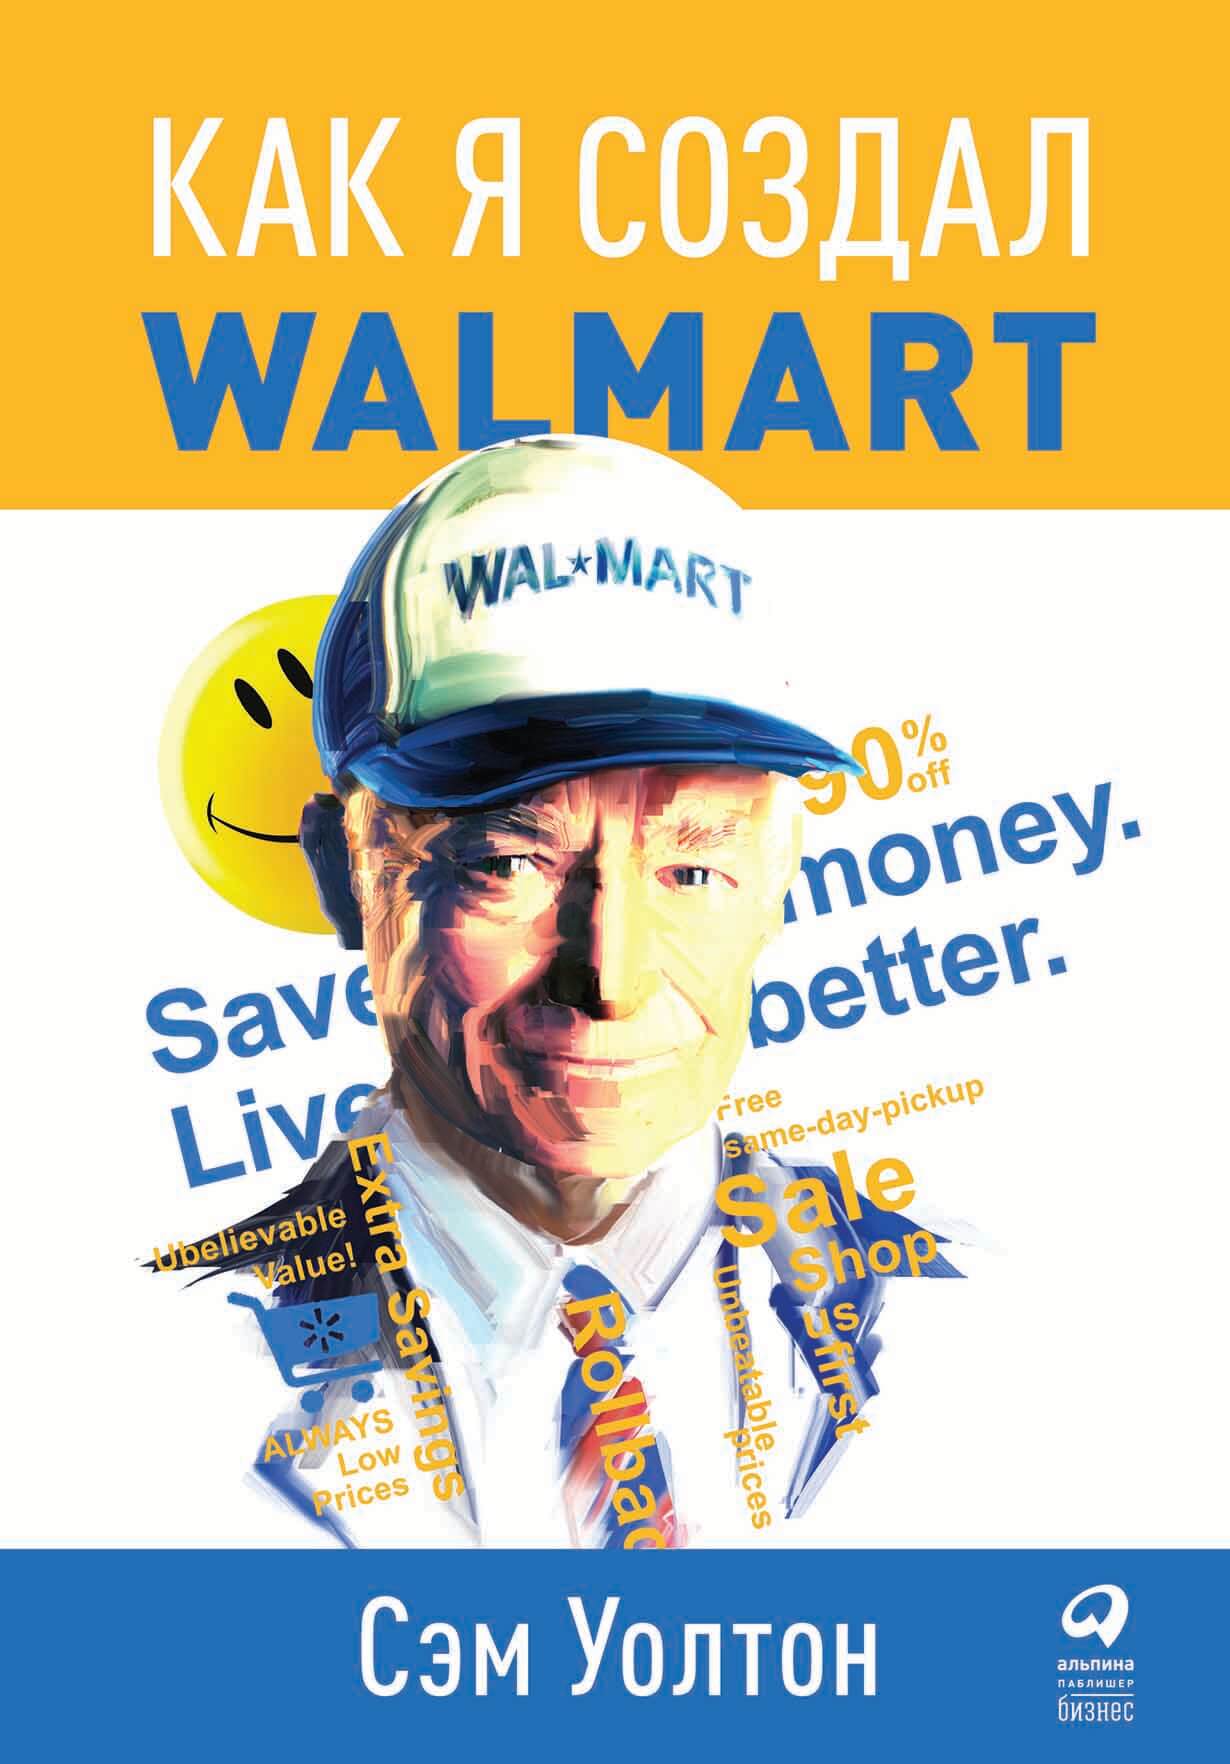 Как я создал WalMart обложка.